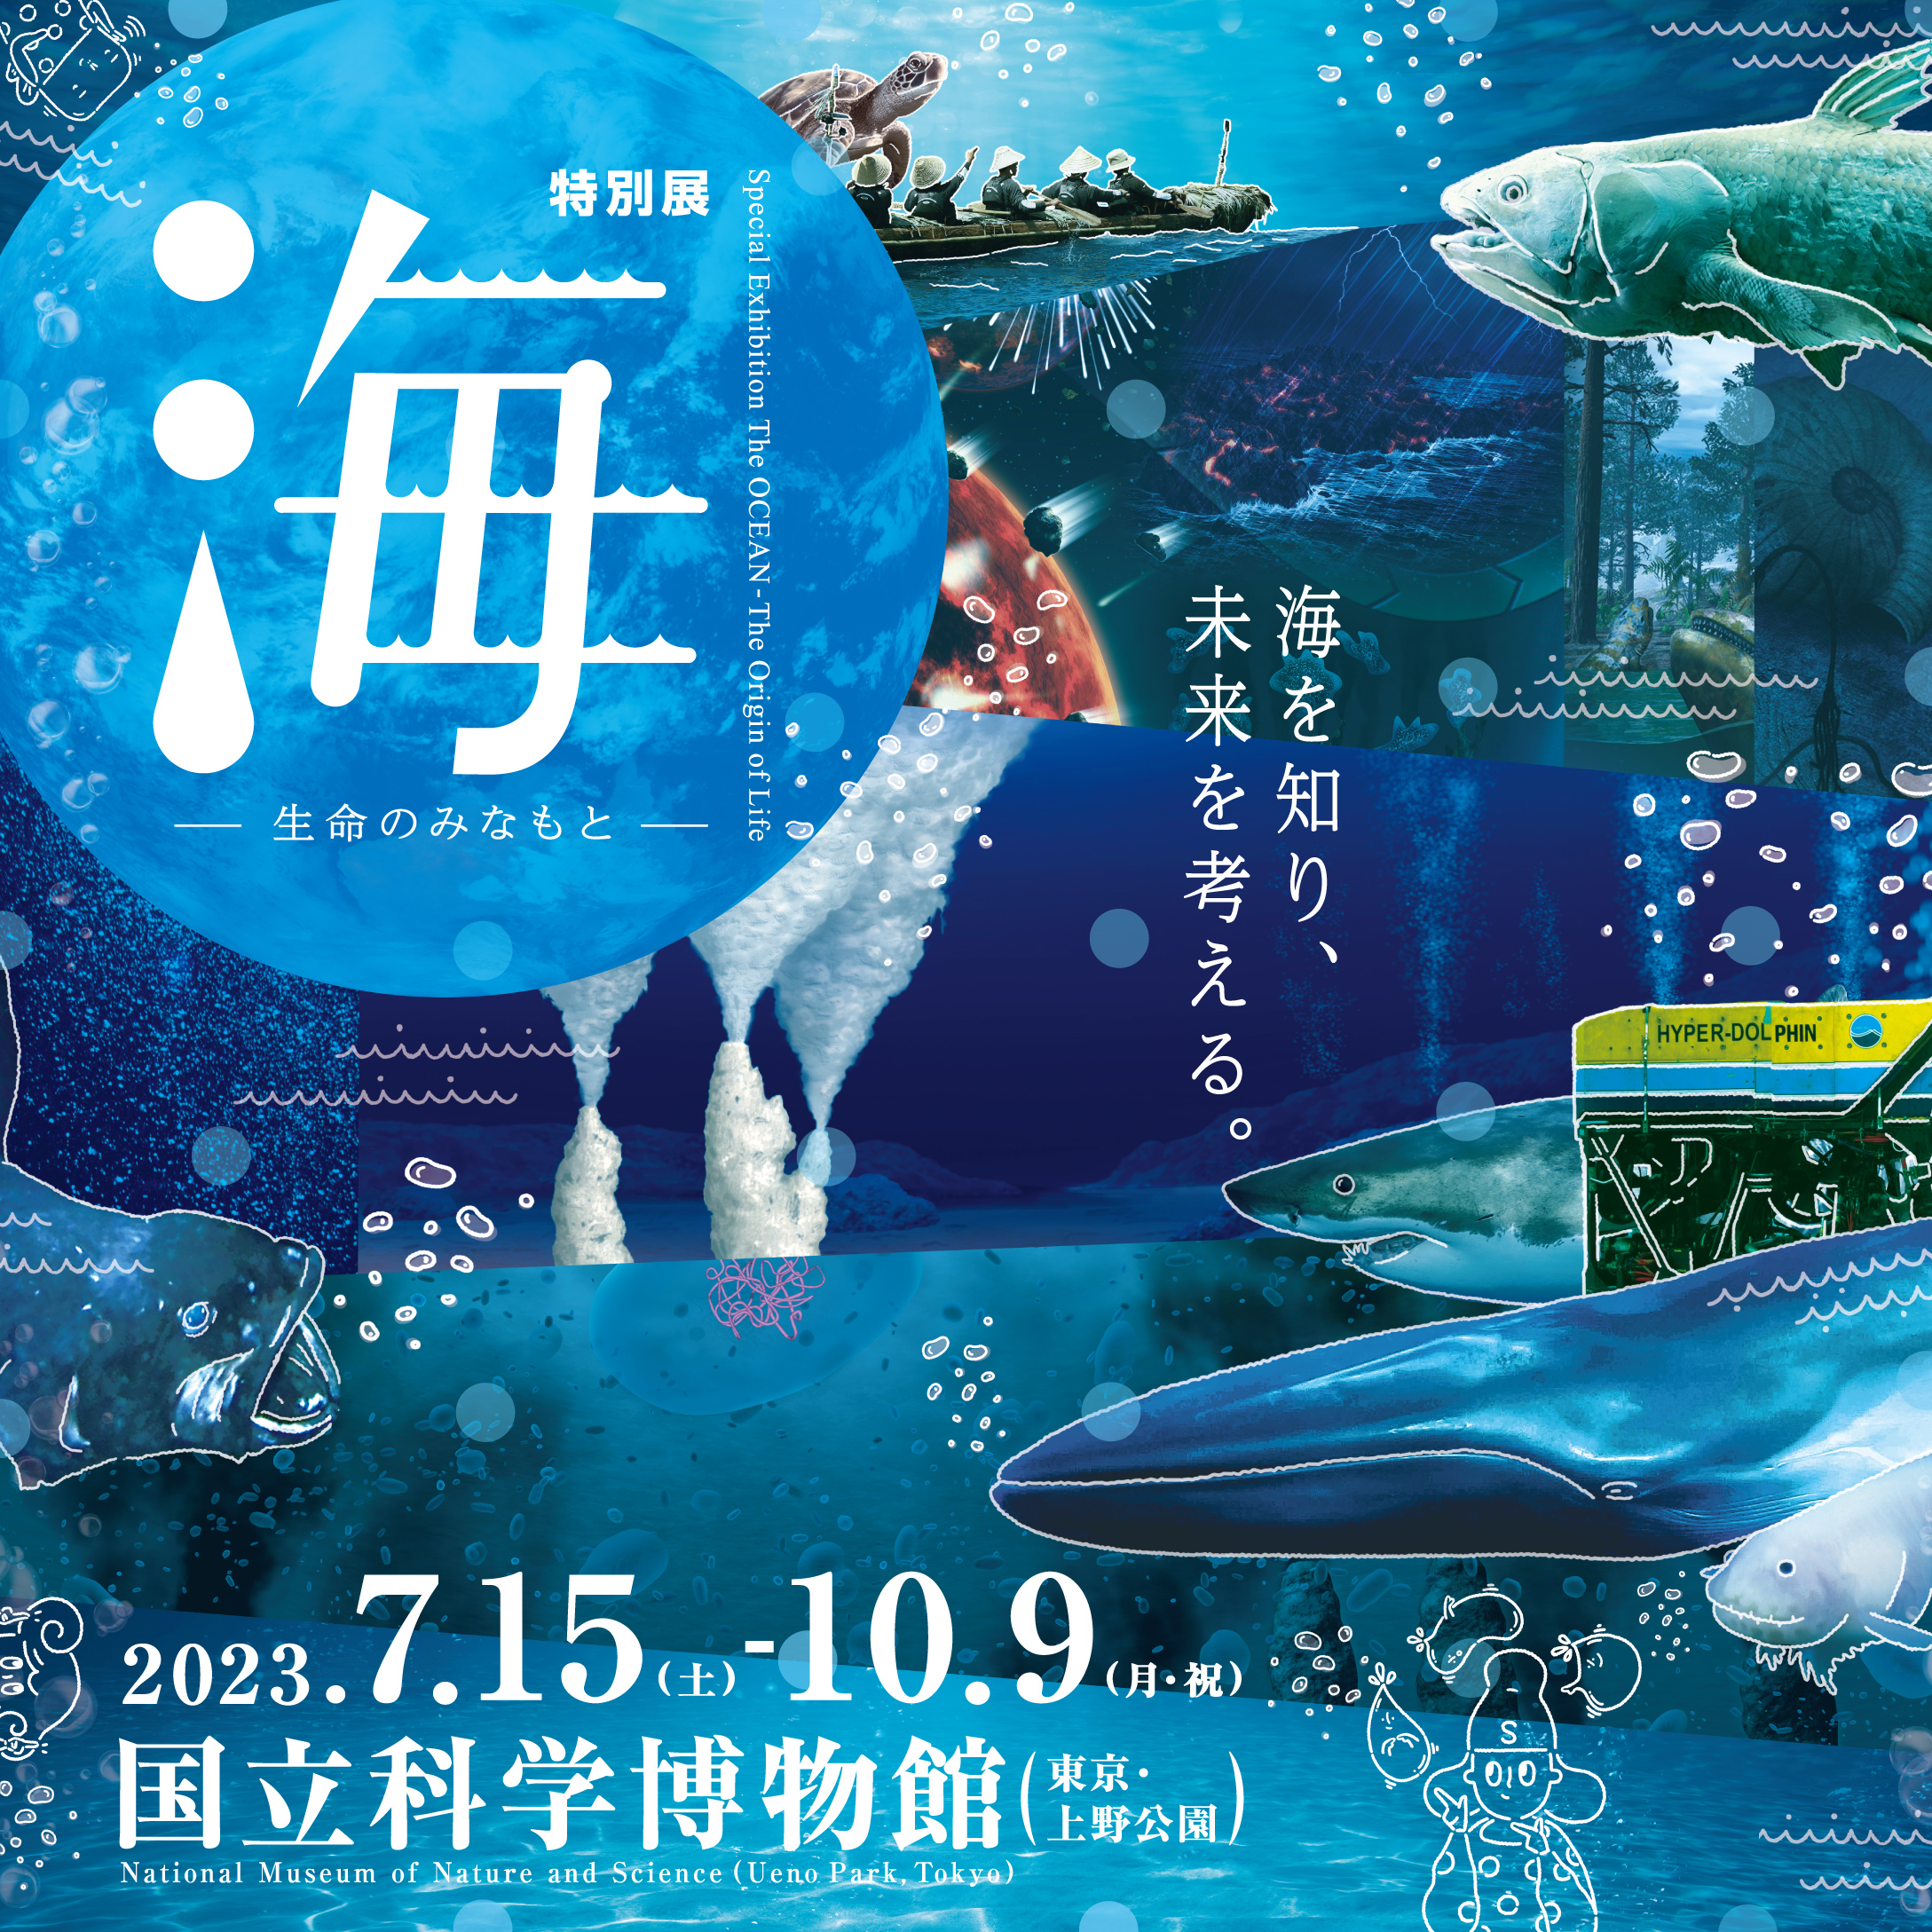 日本最大級の品揃え 海展 国立科学博物館 2枚 collections-medusa.com